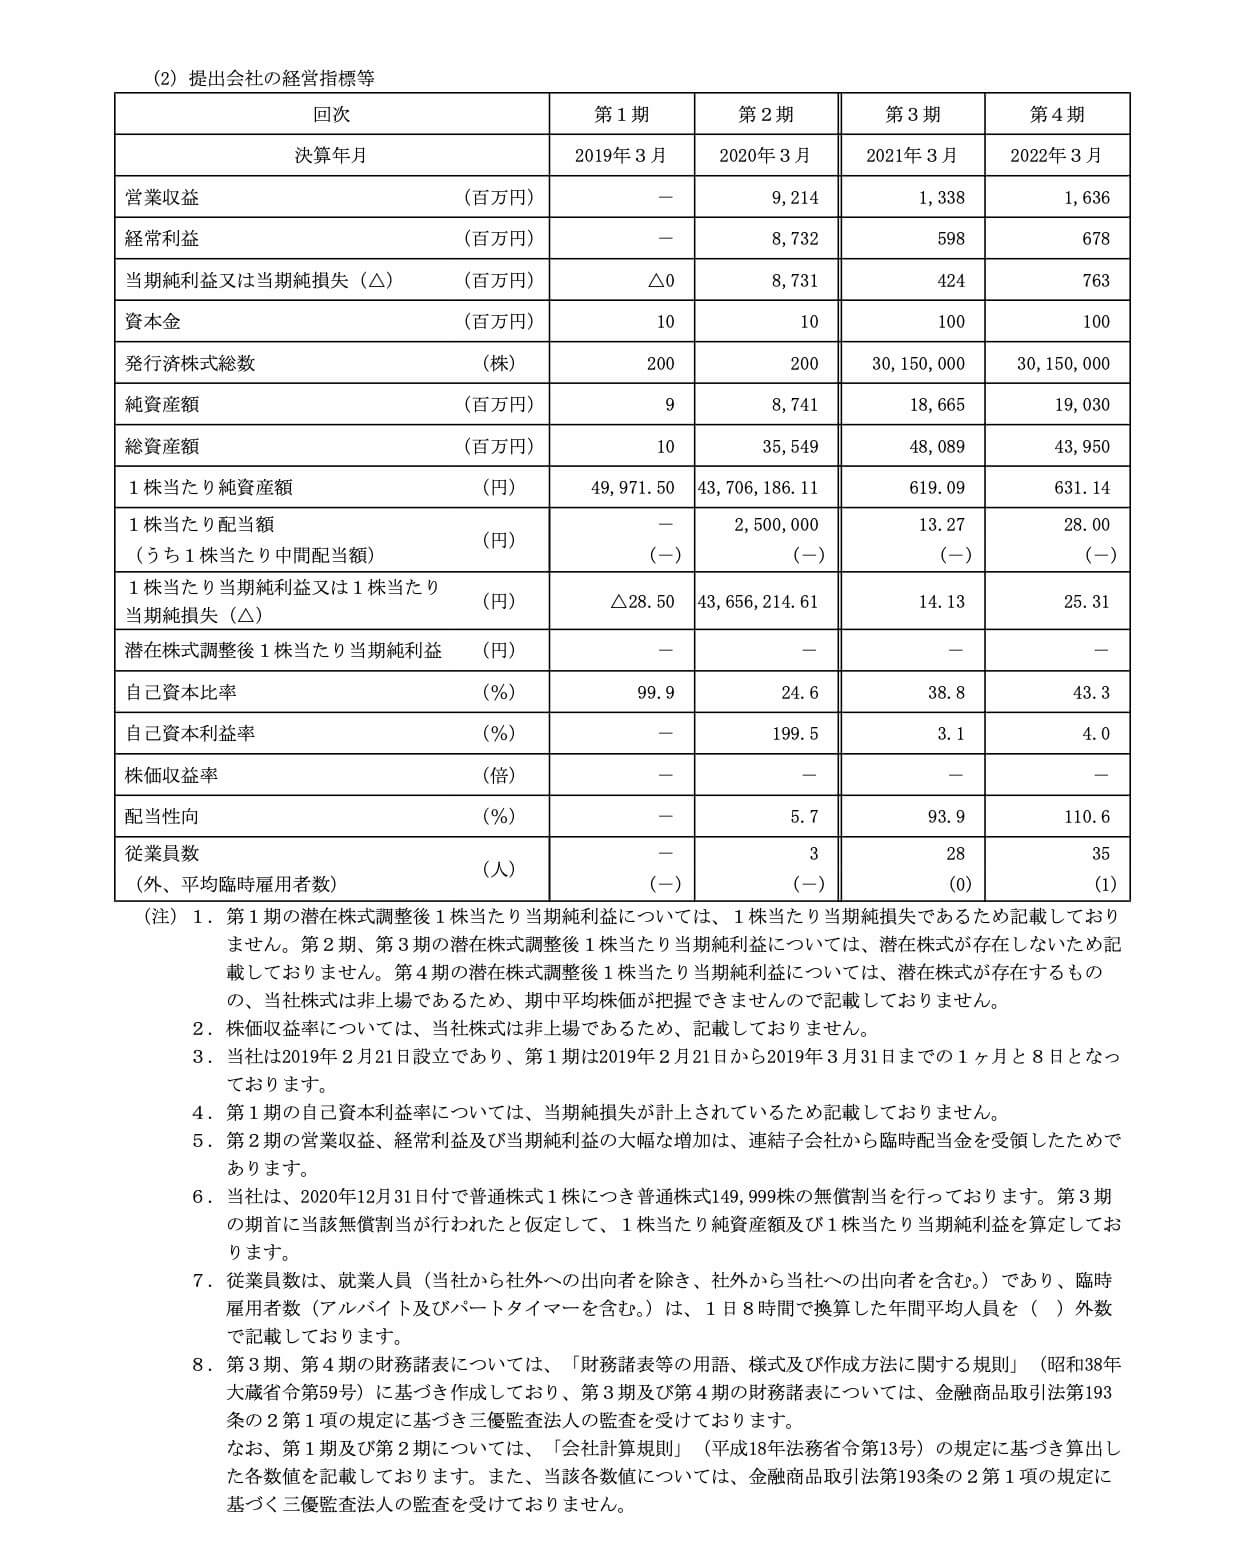 キタムラ・ホールディングス(9349)の経営指標等の推移(単独)